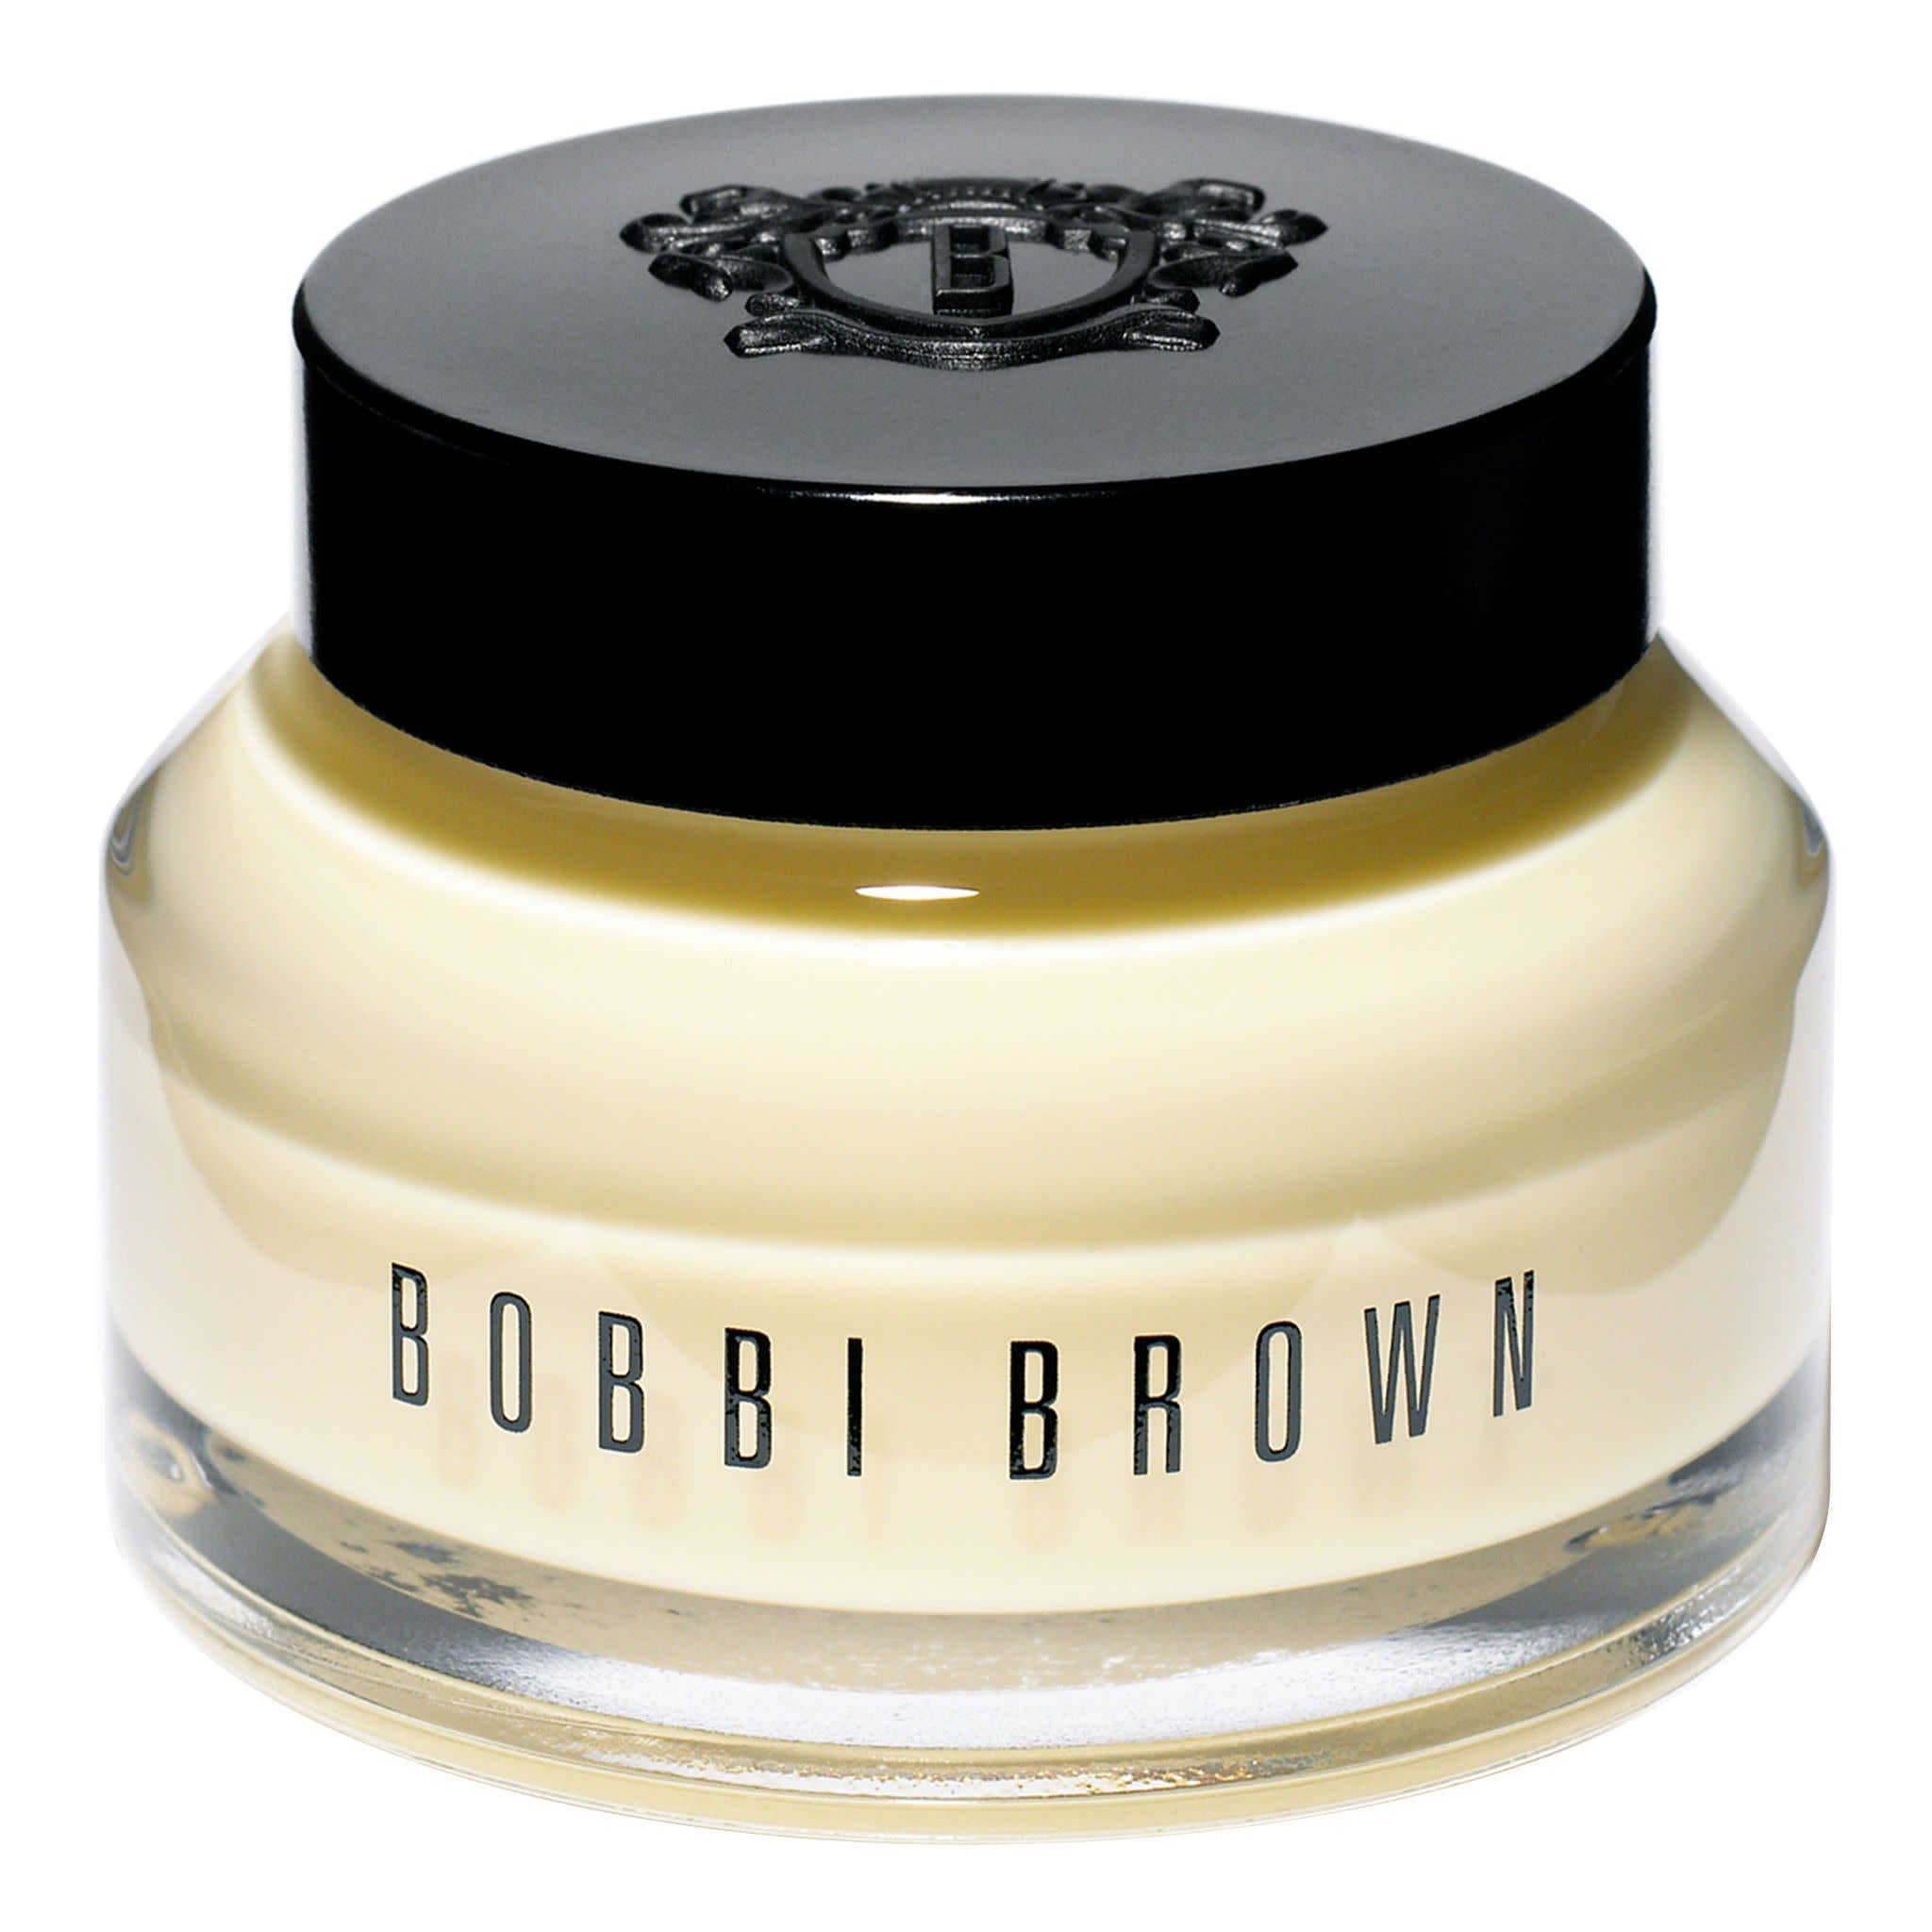 Bobbi Brown Vitamin Enriched Face Base Size variant: 1.7 oz.  main image.